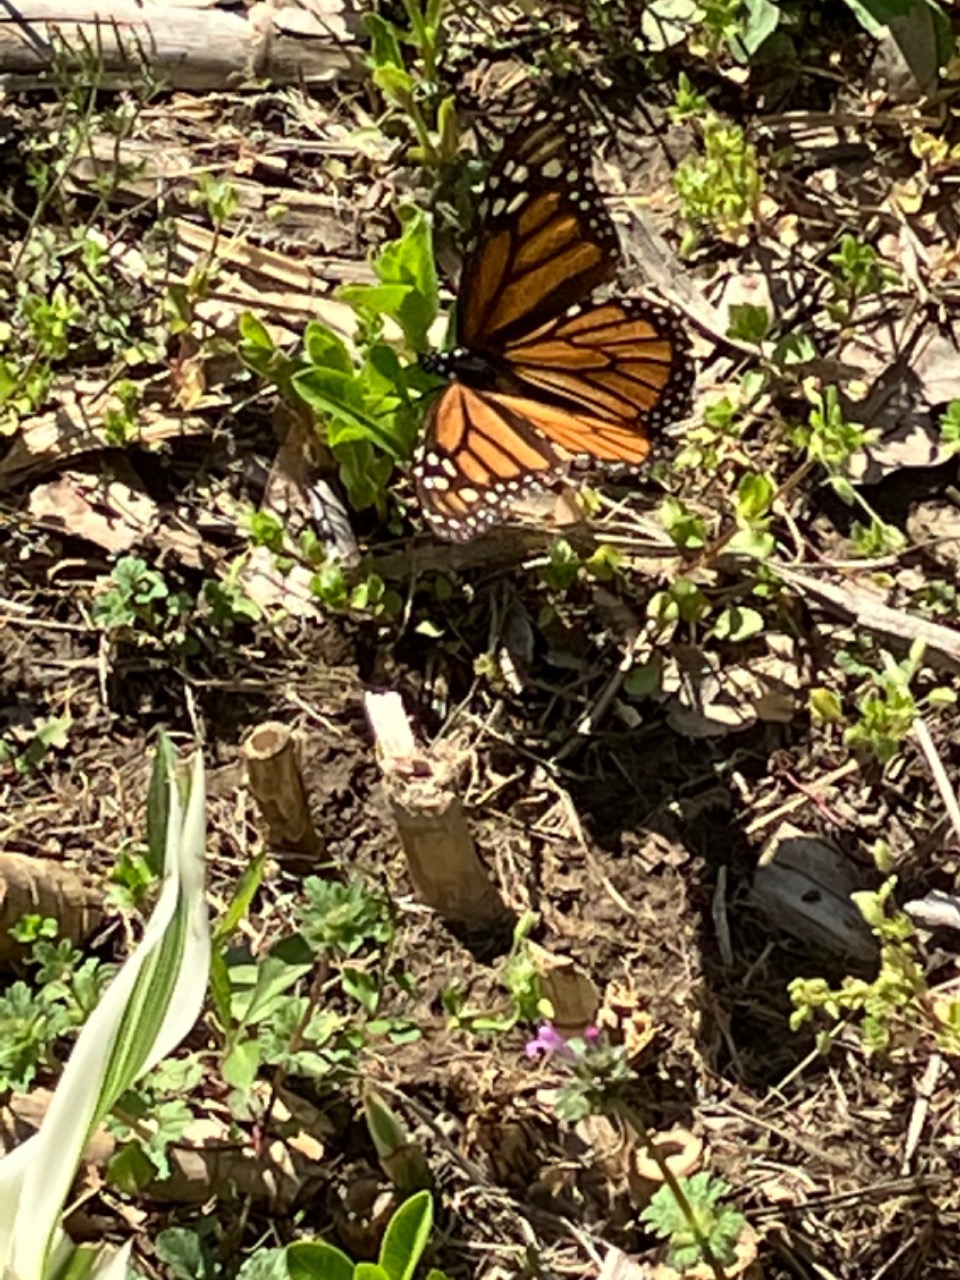 Monarch laying eggs on emerging milkweed